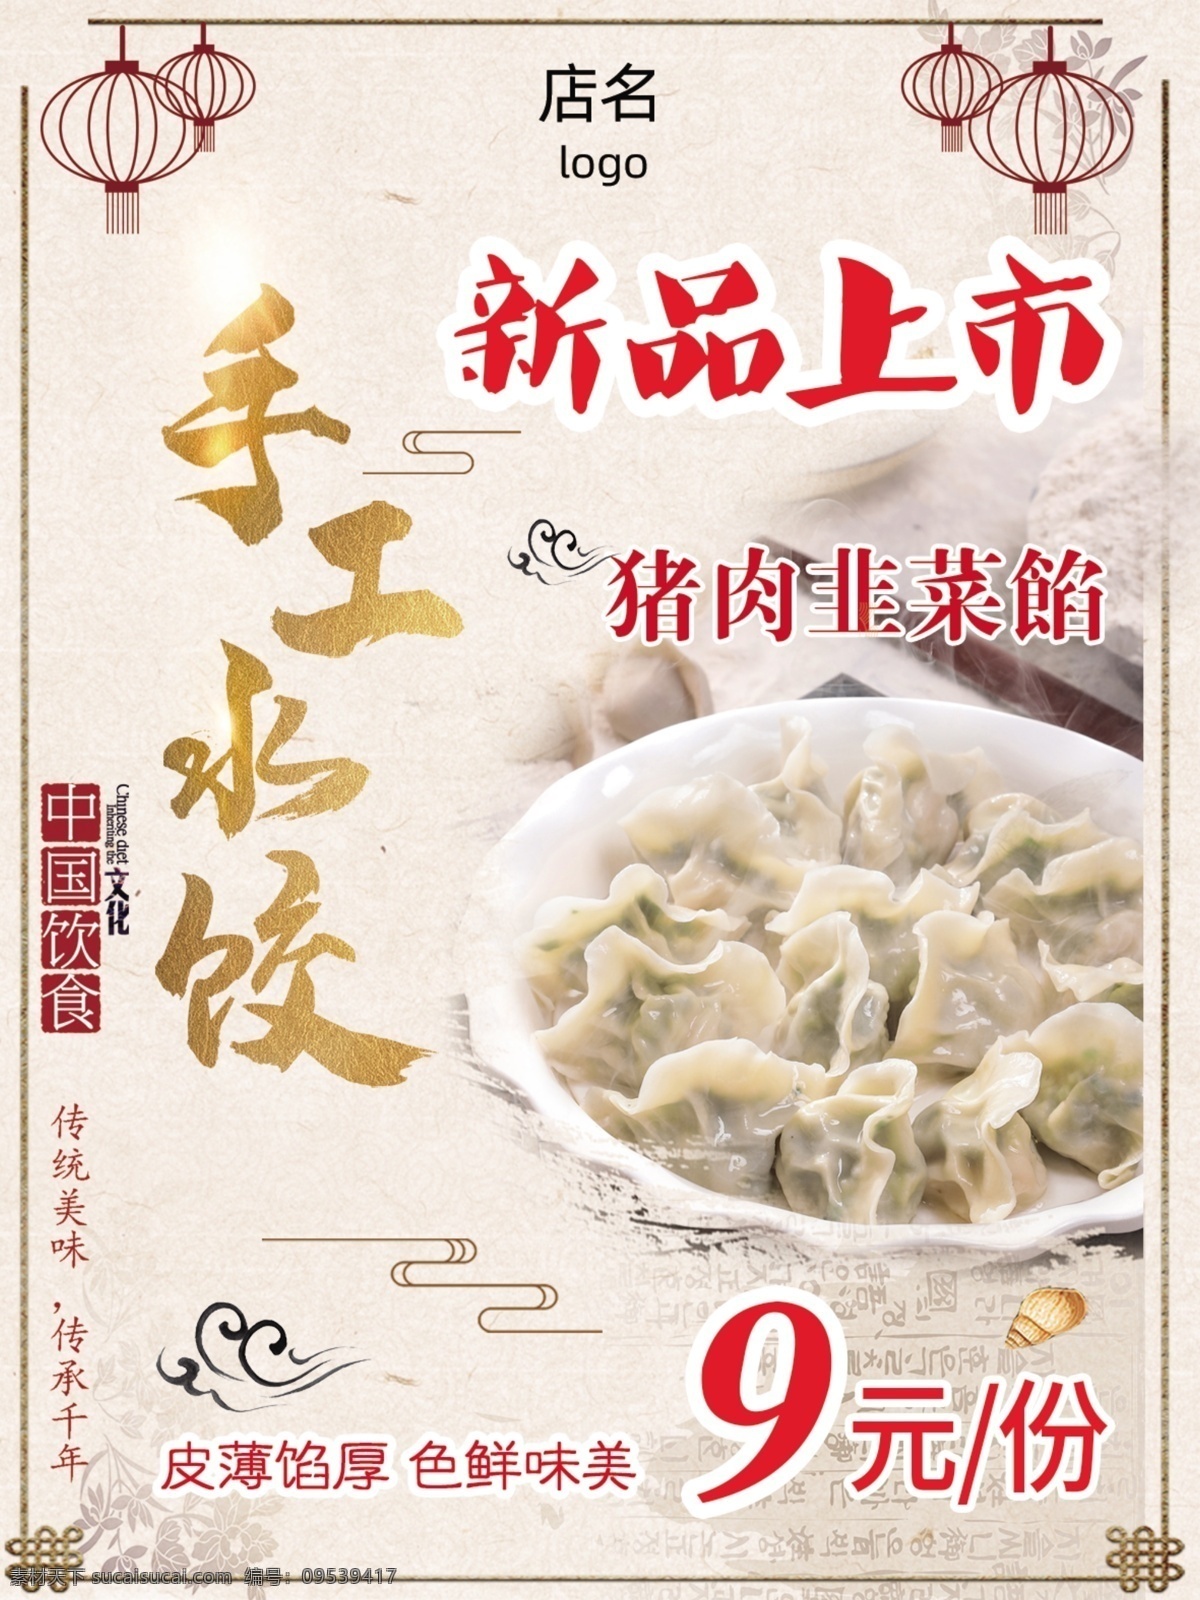 手工水饺 新品上市 猪肉韭菜 水饺 饺子 餐饮 海报 传统水饺 广告